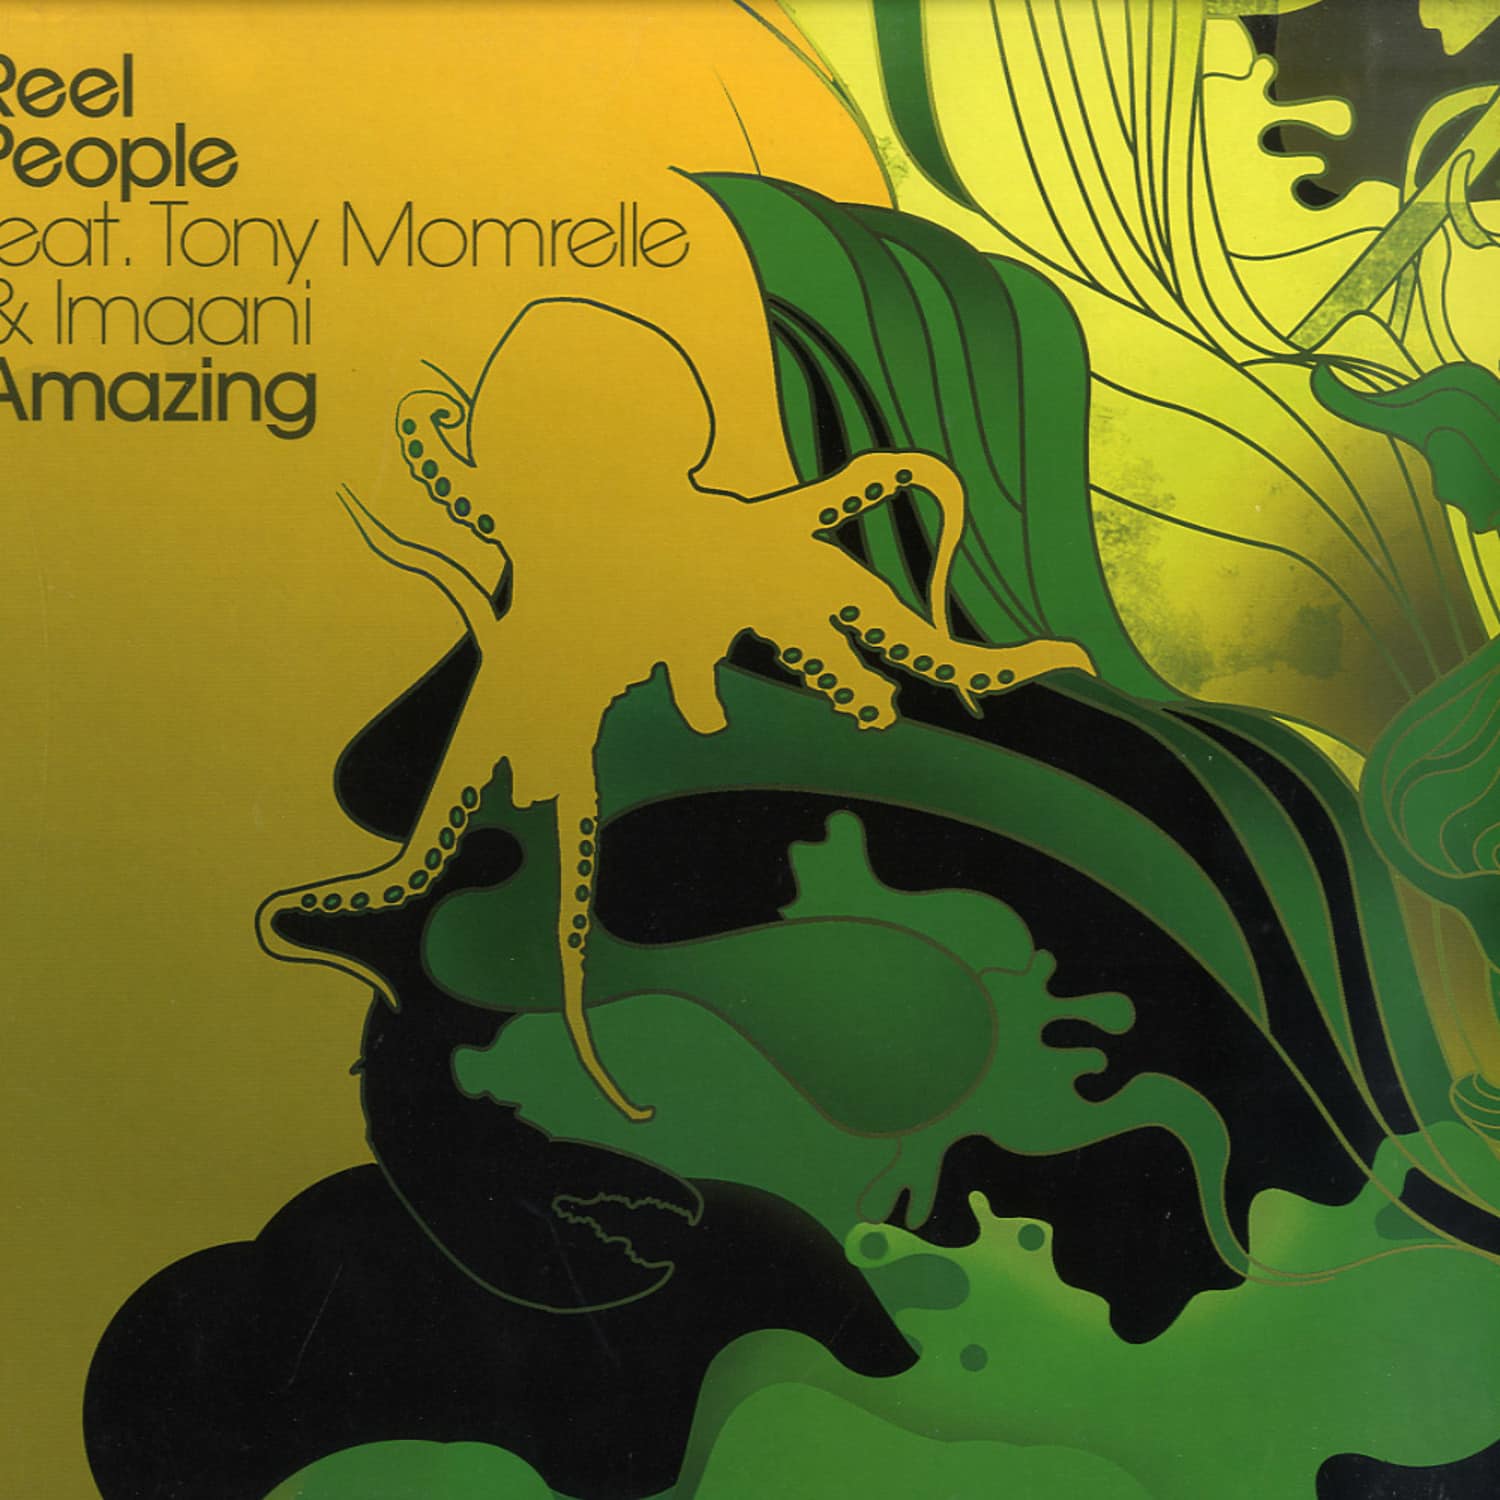 Reel People feat Tony Momrelle & Imaani - AMAZING